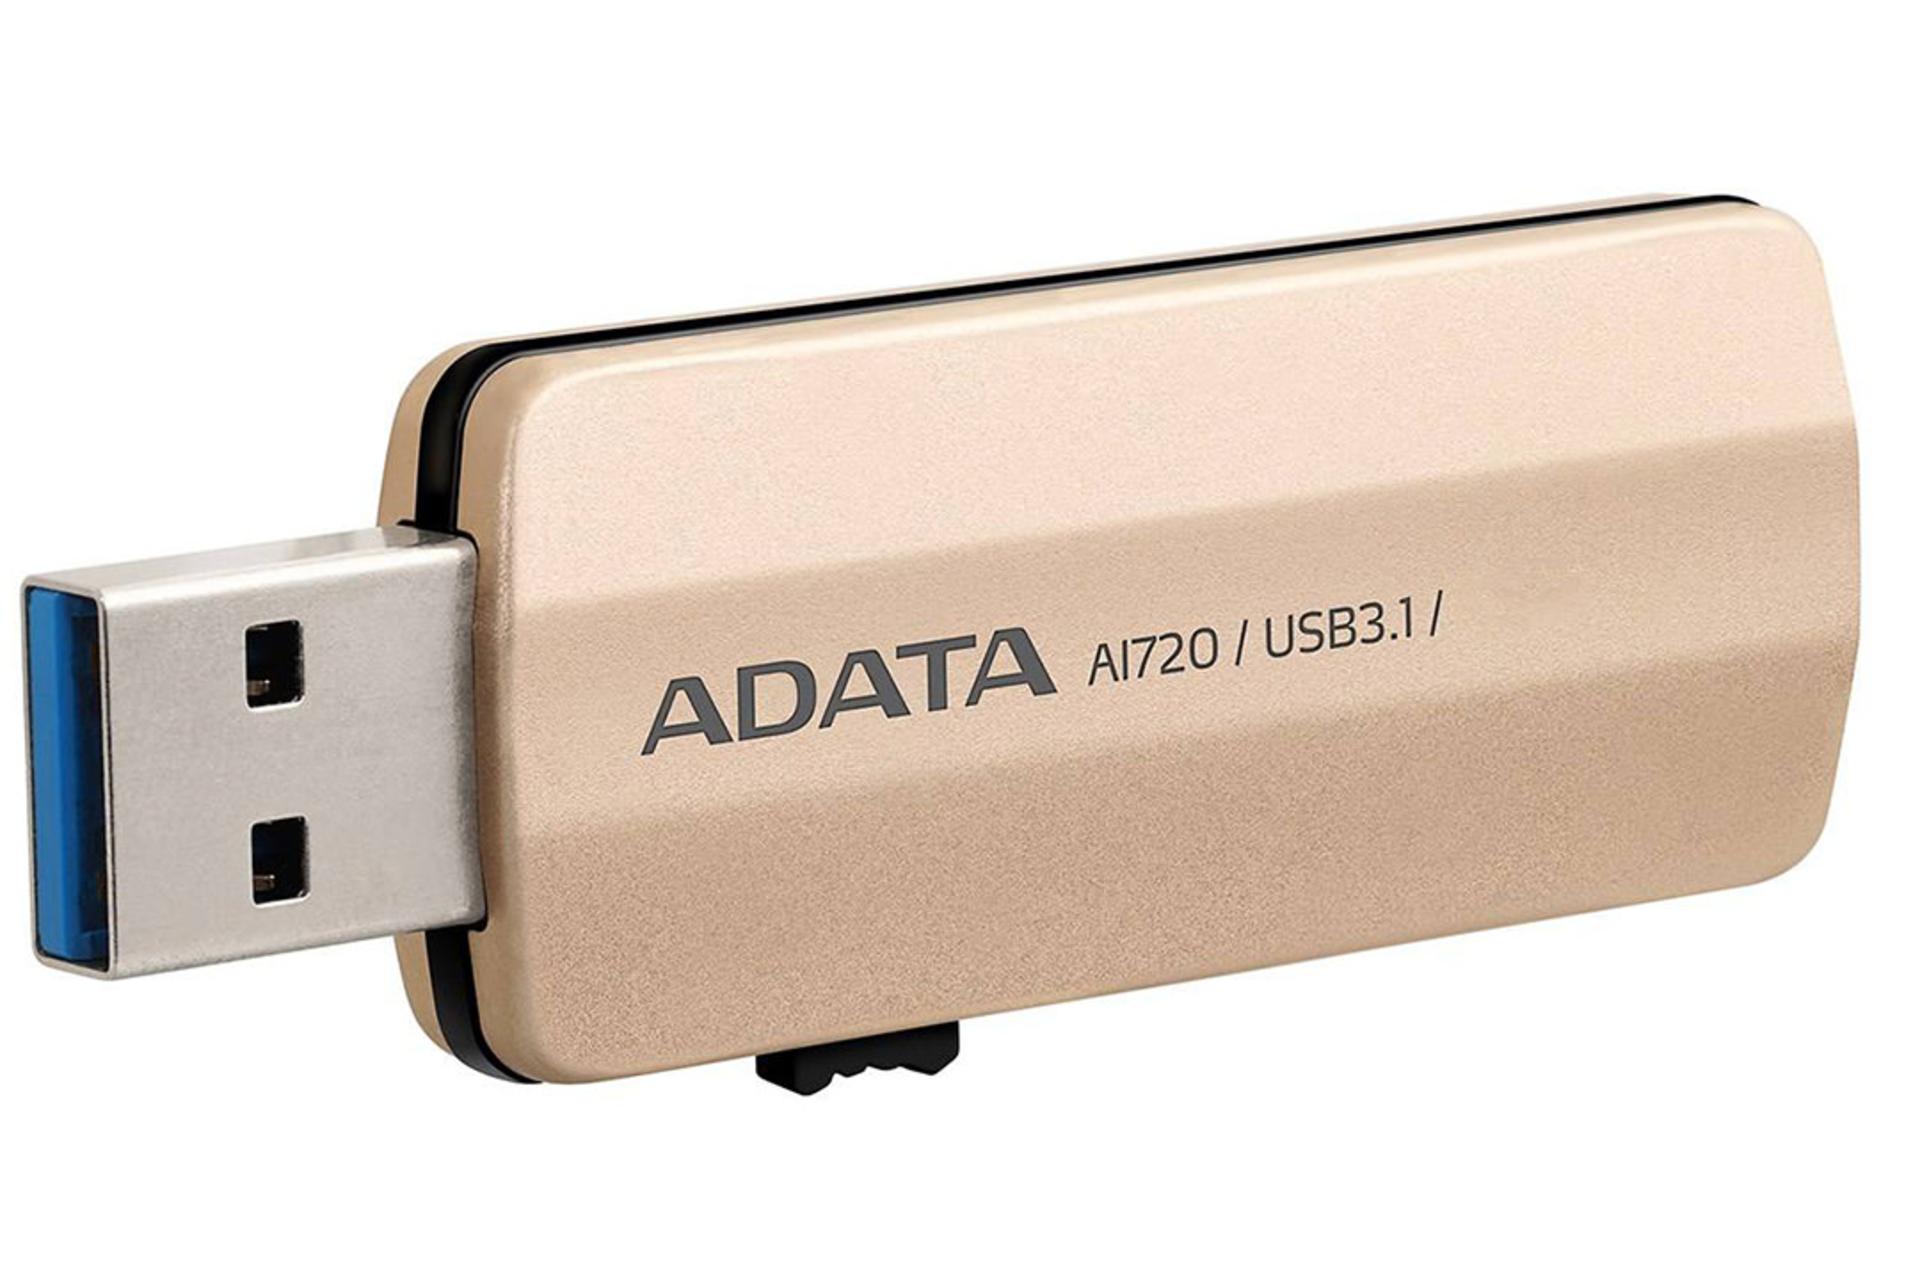 ADATA i-Memory AI720